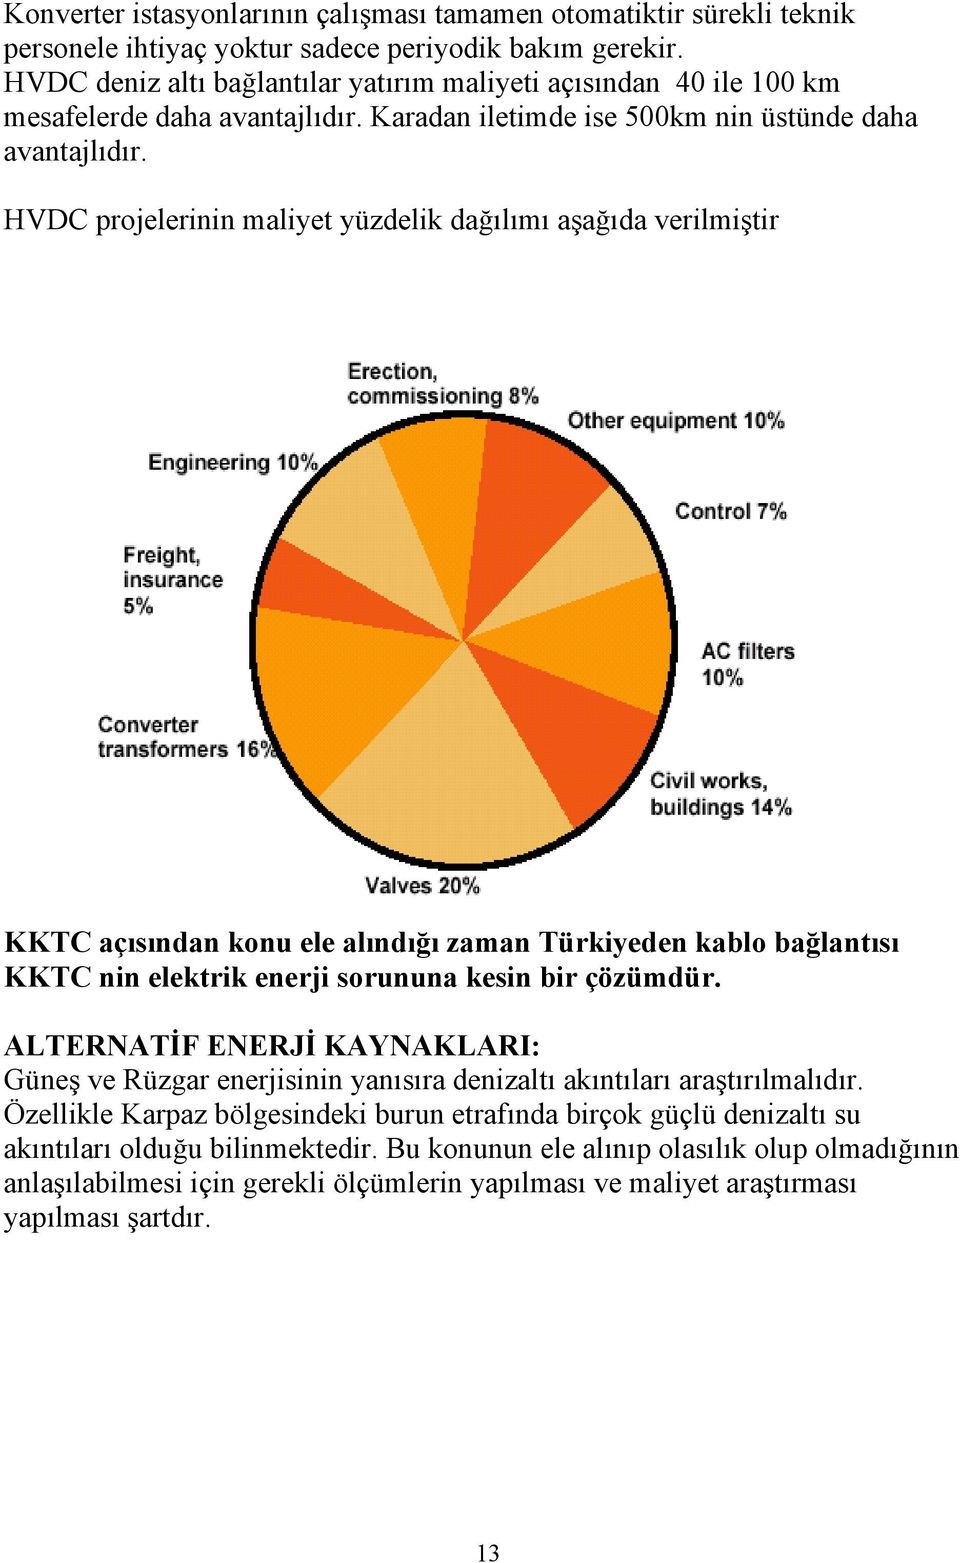 HVDC projelerinin maliyet yüzdelik dağılımı aşağıda verilmiştir KKTC açısından konu ele alındığı zaman Türkiyeden kablo bağlantısı KKTC nin elektrik enerji sorununa kesin bir çözümdür.